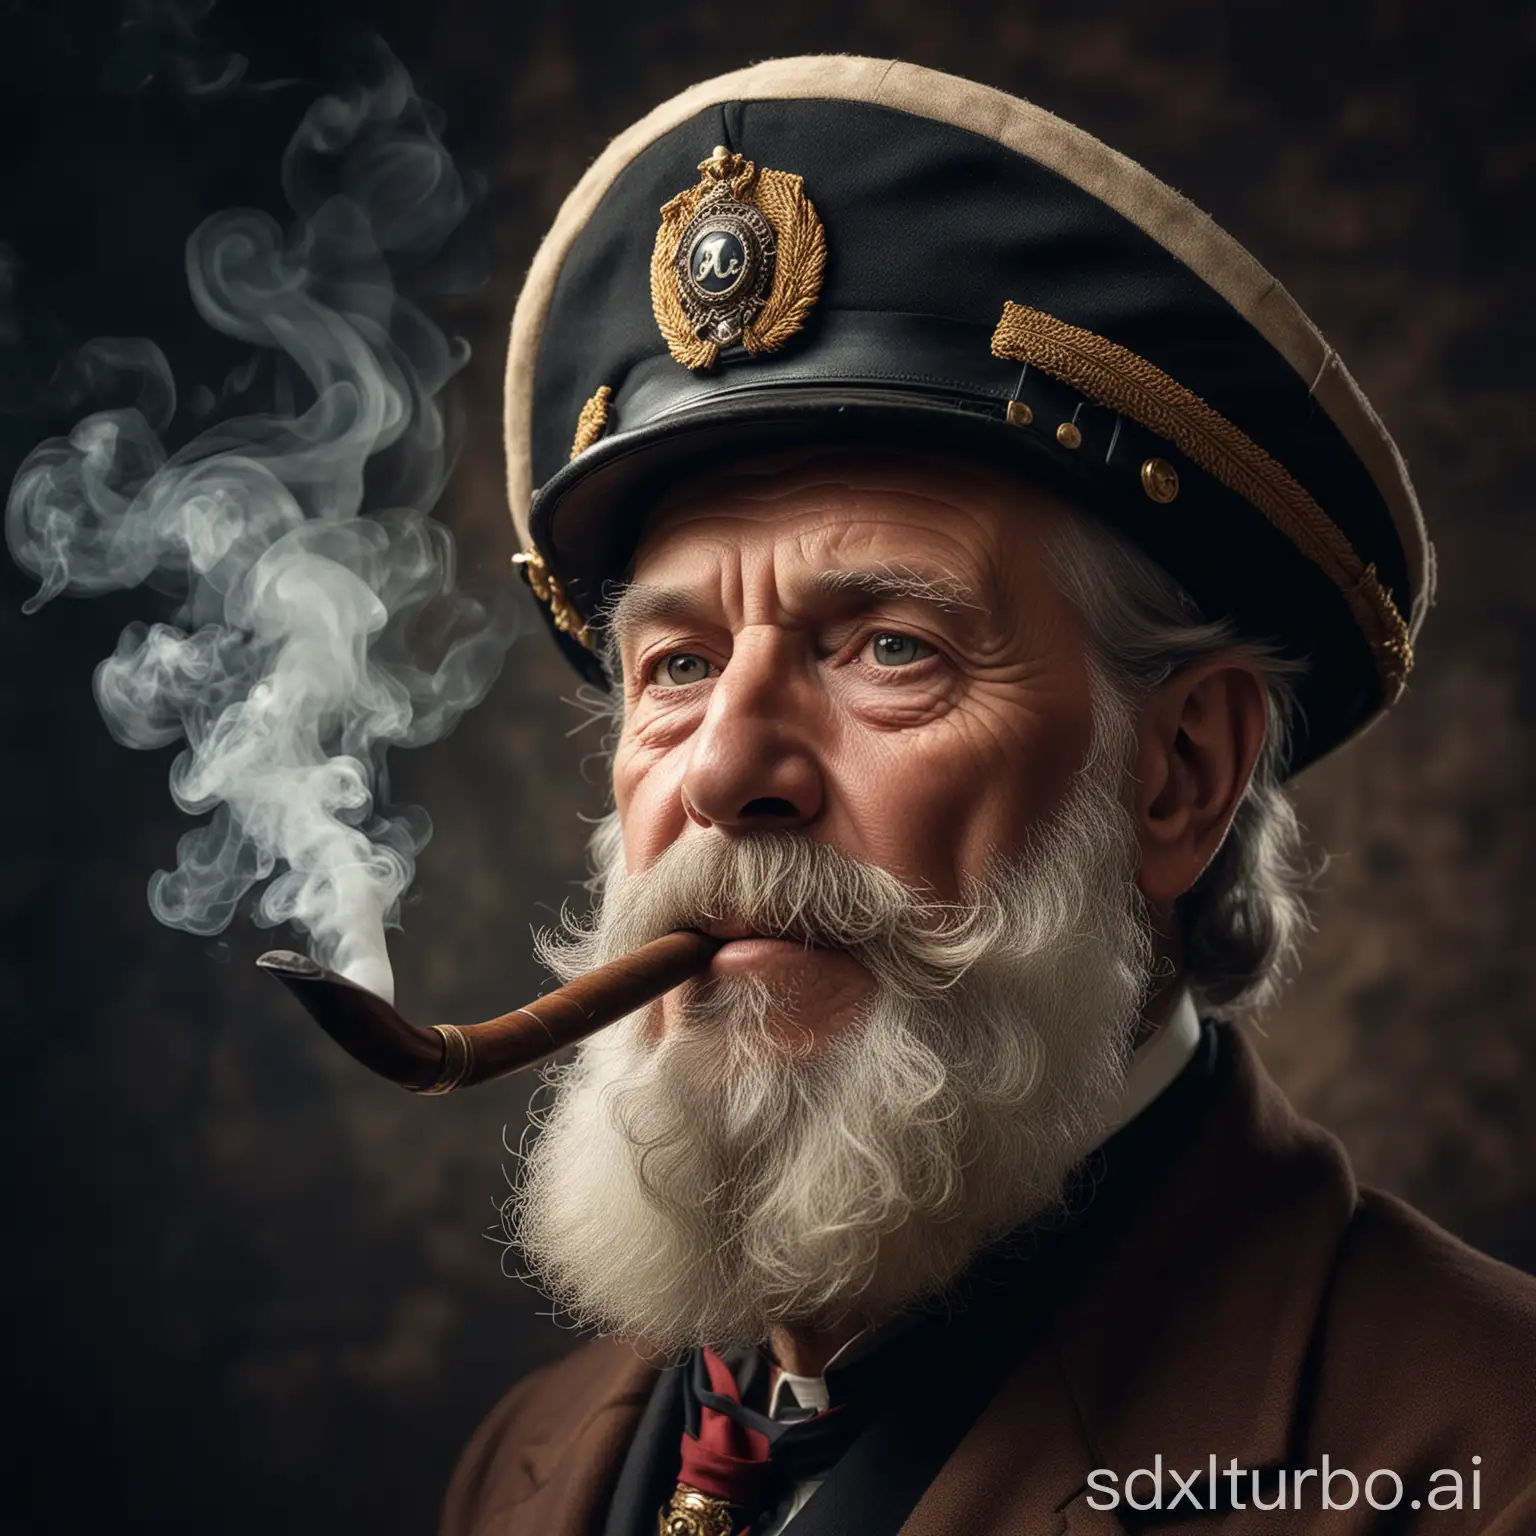 Foto superscharf. Porträt von einem alten Kapitän mit einer Pfeife im Mund und einer Kapitänsmütze. Er soll einen Vollbart haben, das Gesicht ist faltig. Aus der Tabackpfeife steigt Rauch auf.